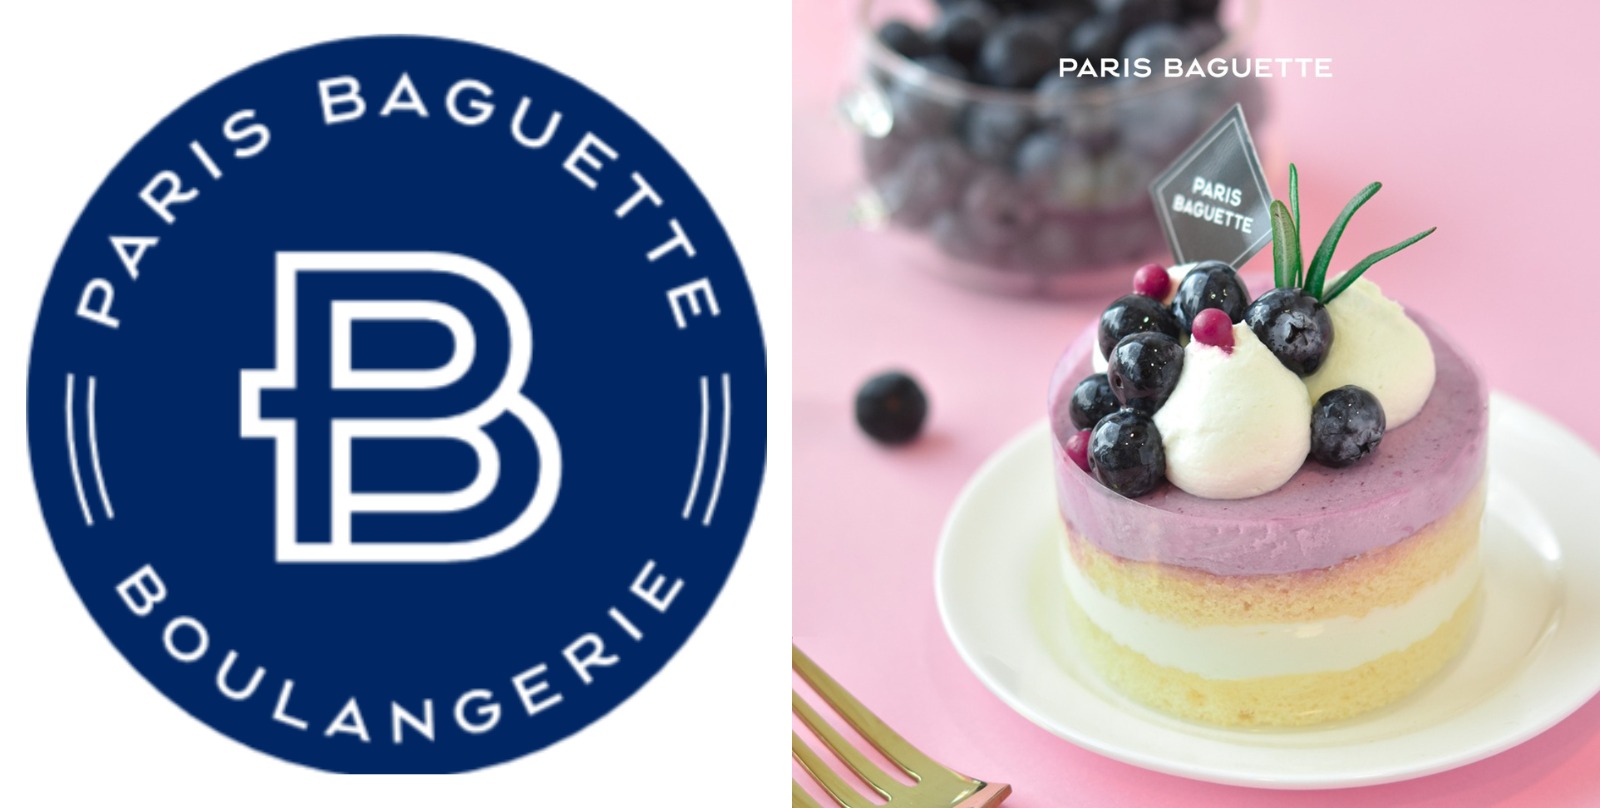 First birthday cake recipe - yogurt and raspberry ice cream cake recipe |  Buona Pappa